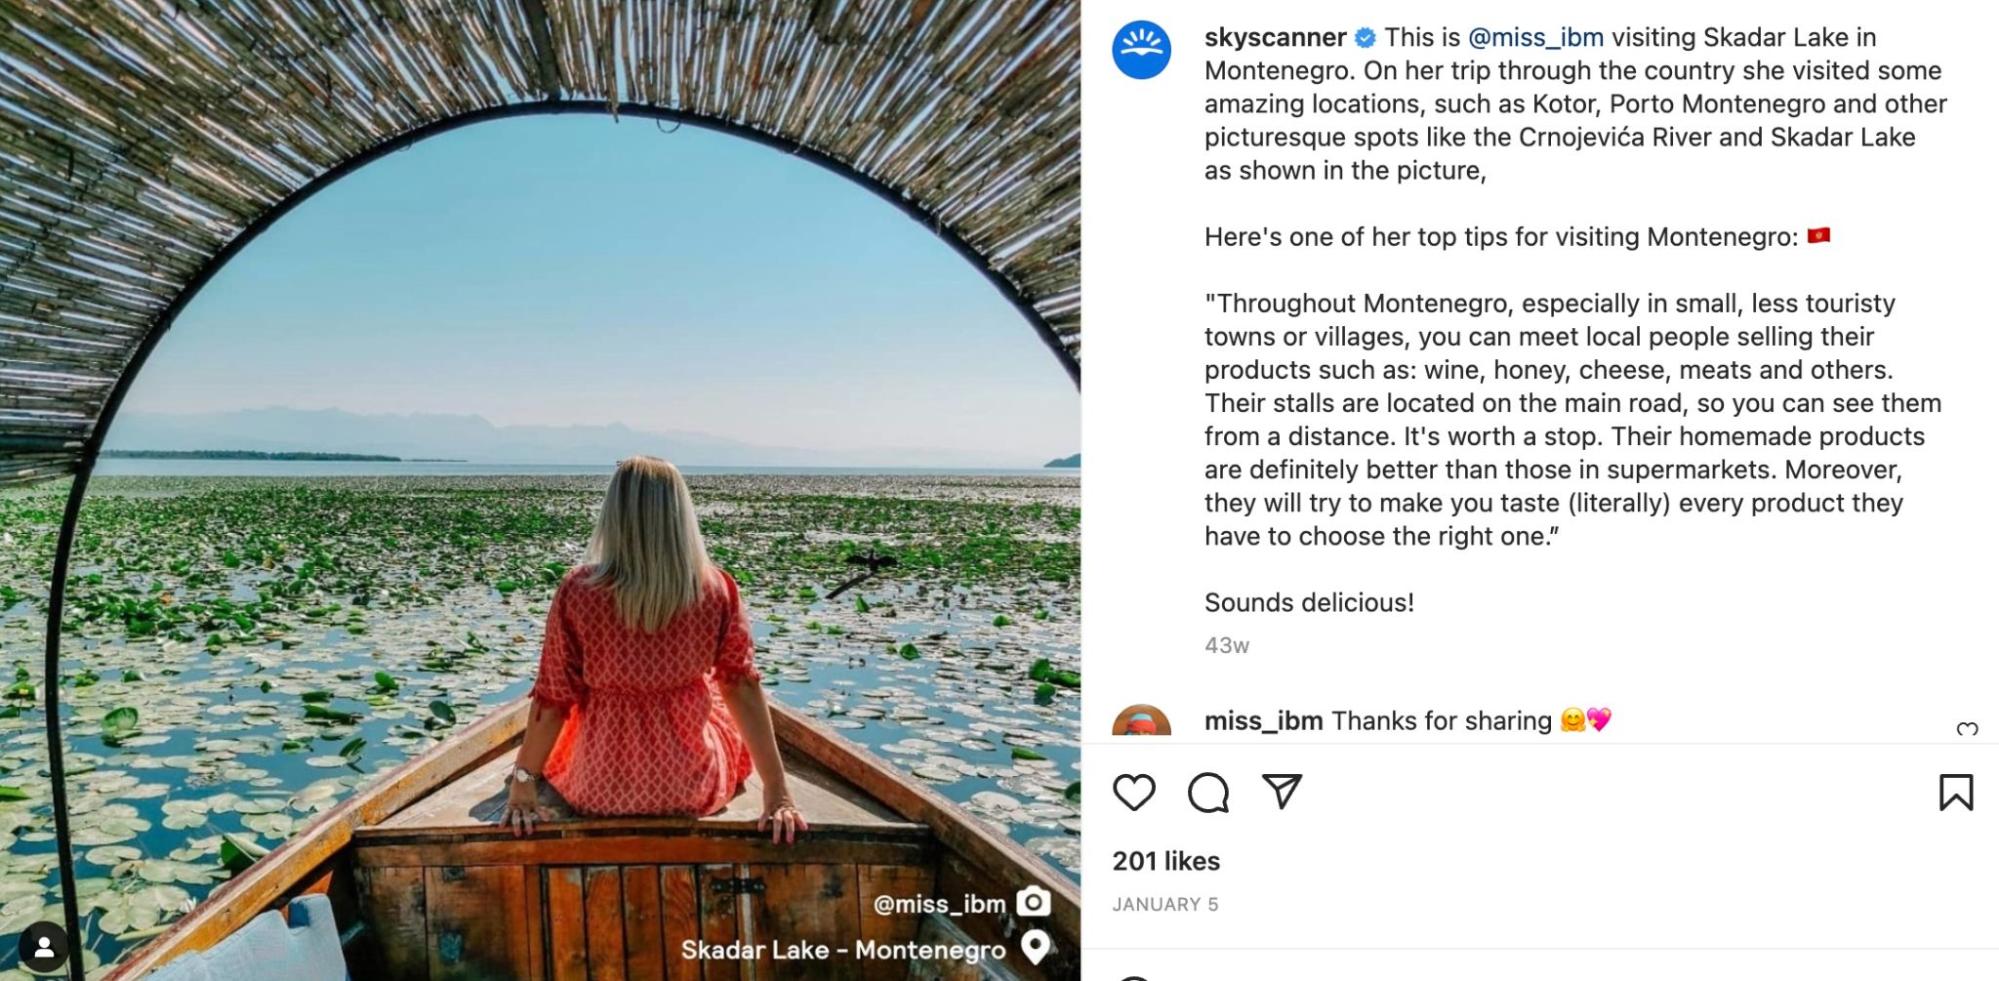 captura de tela da postagem no Instagram do Skyscanner de uma mulher sentada em um barco em Montenegro